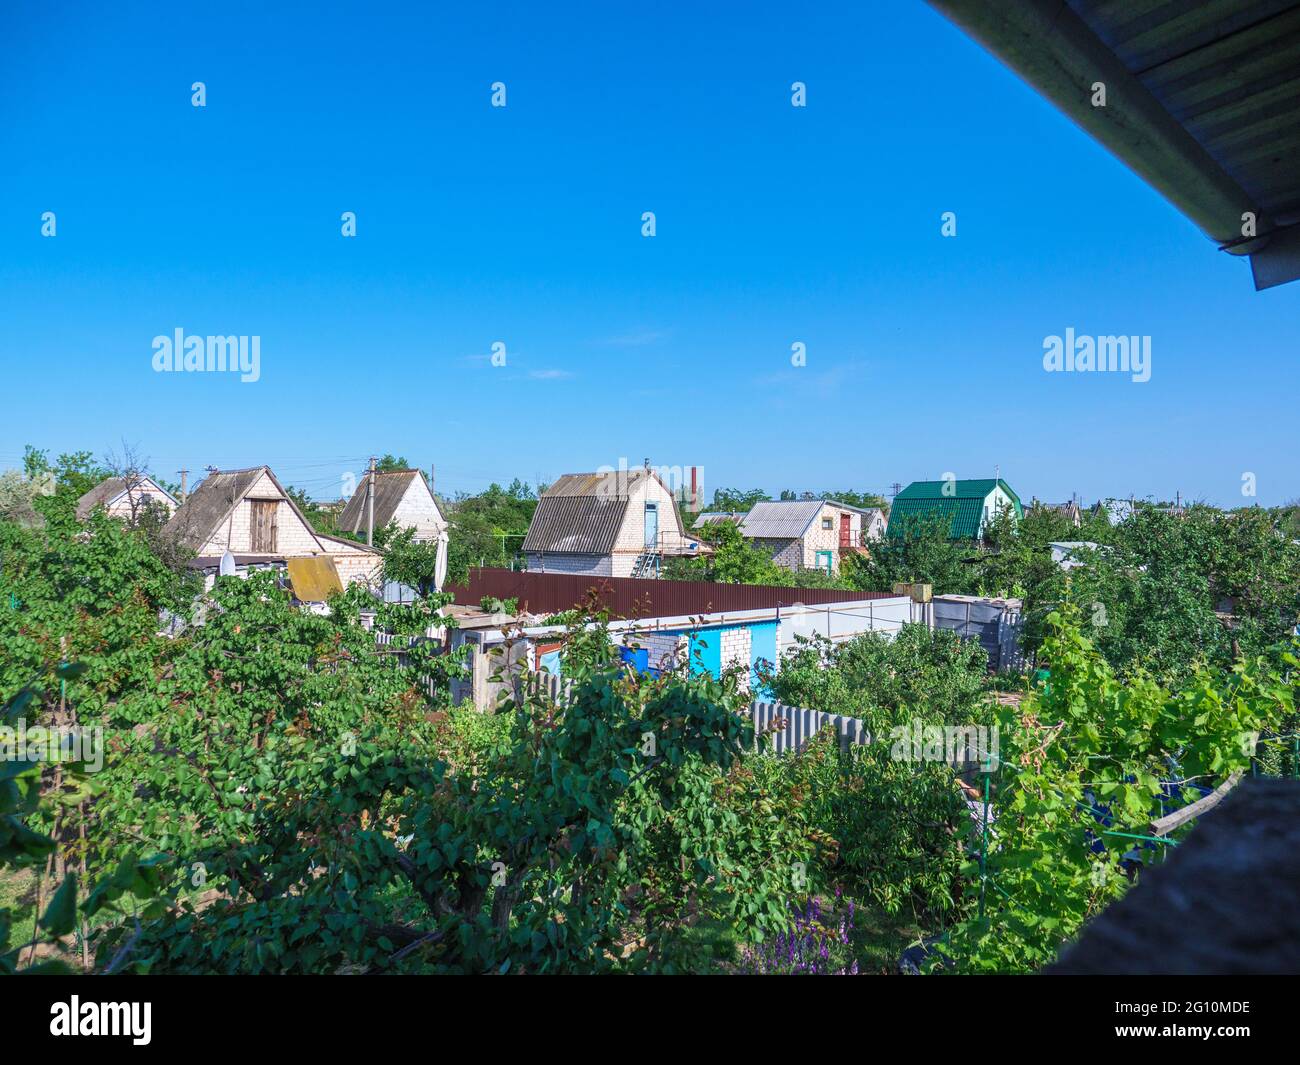 Vista desde el balcón superior sobre las casas de campo de dos pisos dacha con pequeños parches de terreno con jardines verdes. El concepto de patrimonio de la época soviética. Foto de stock